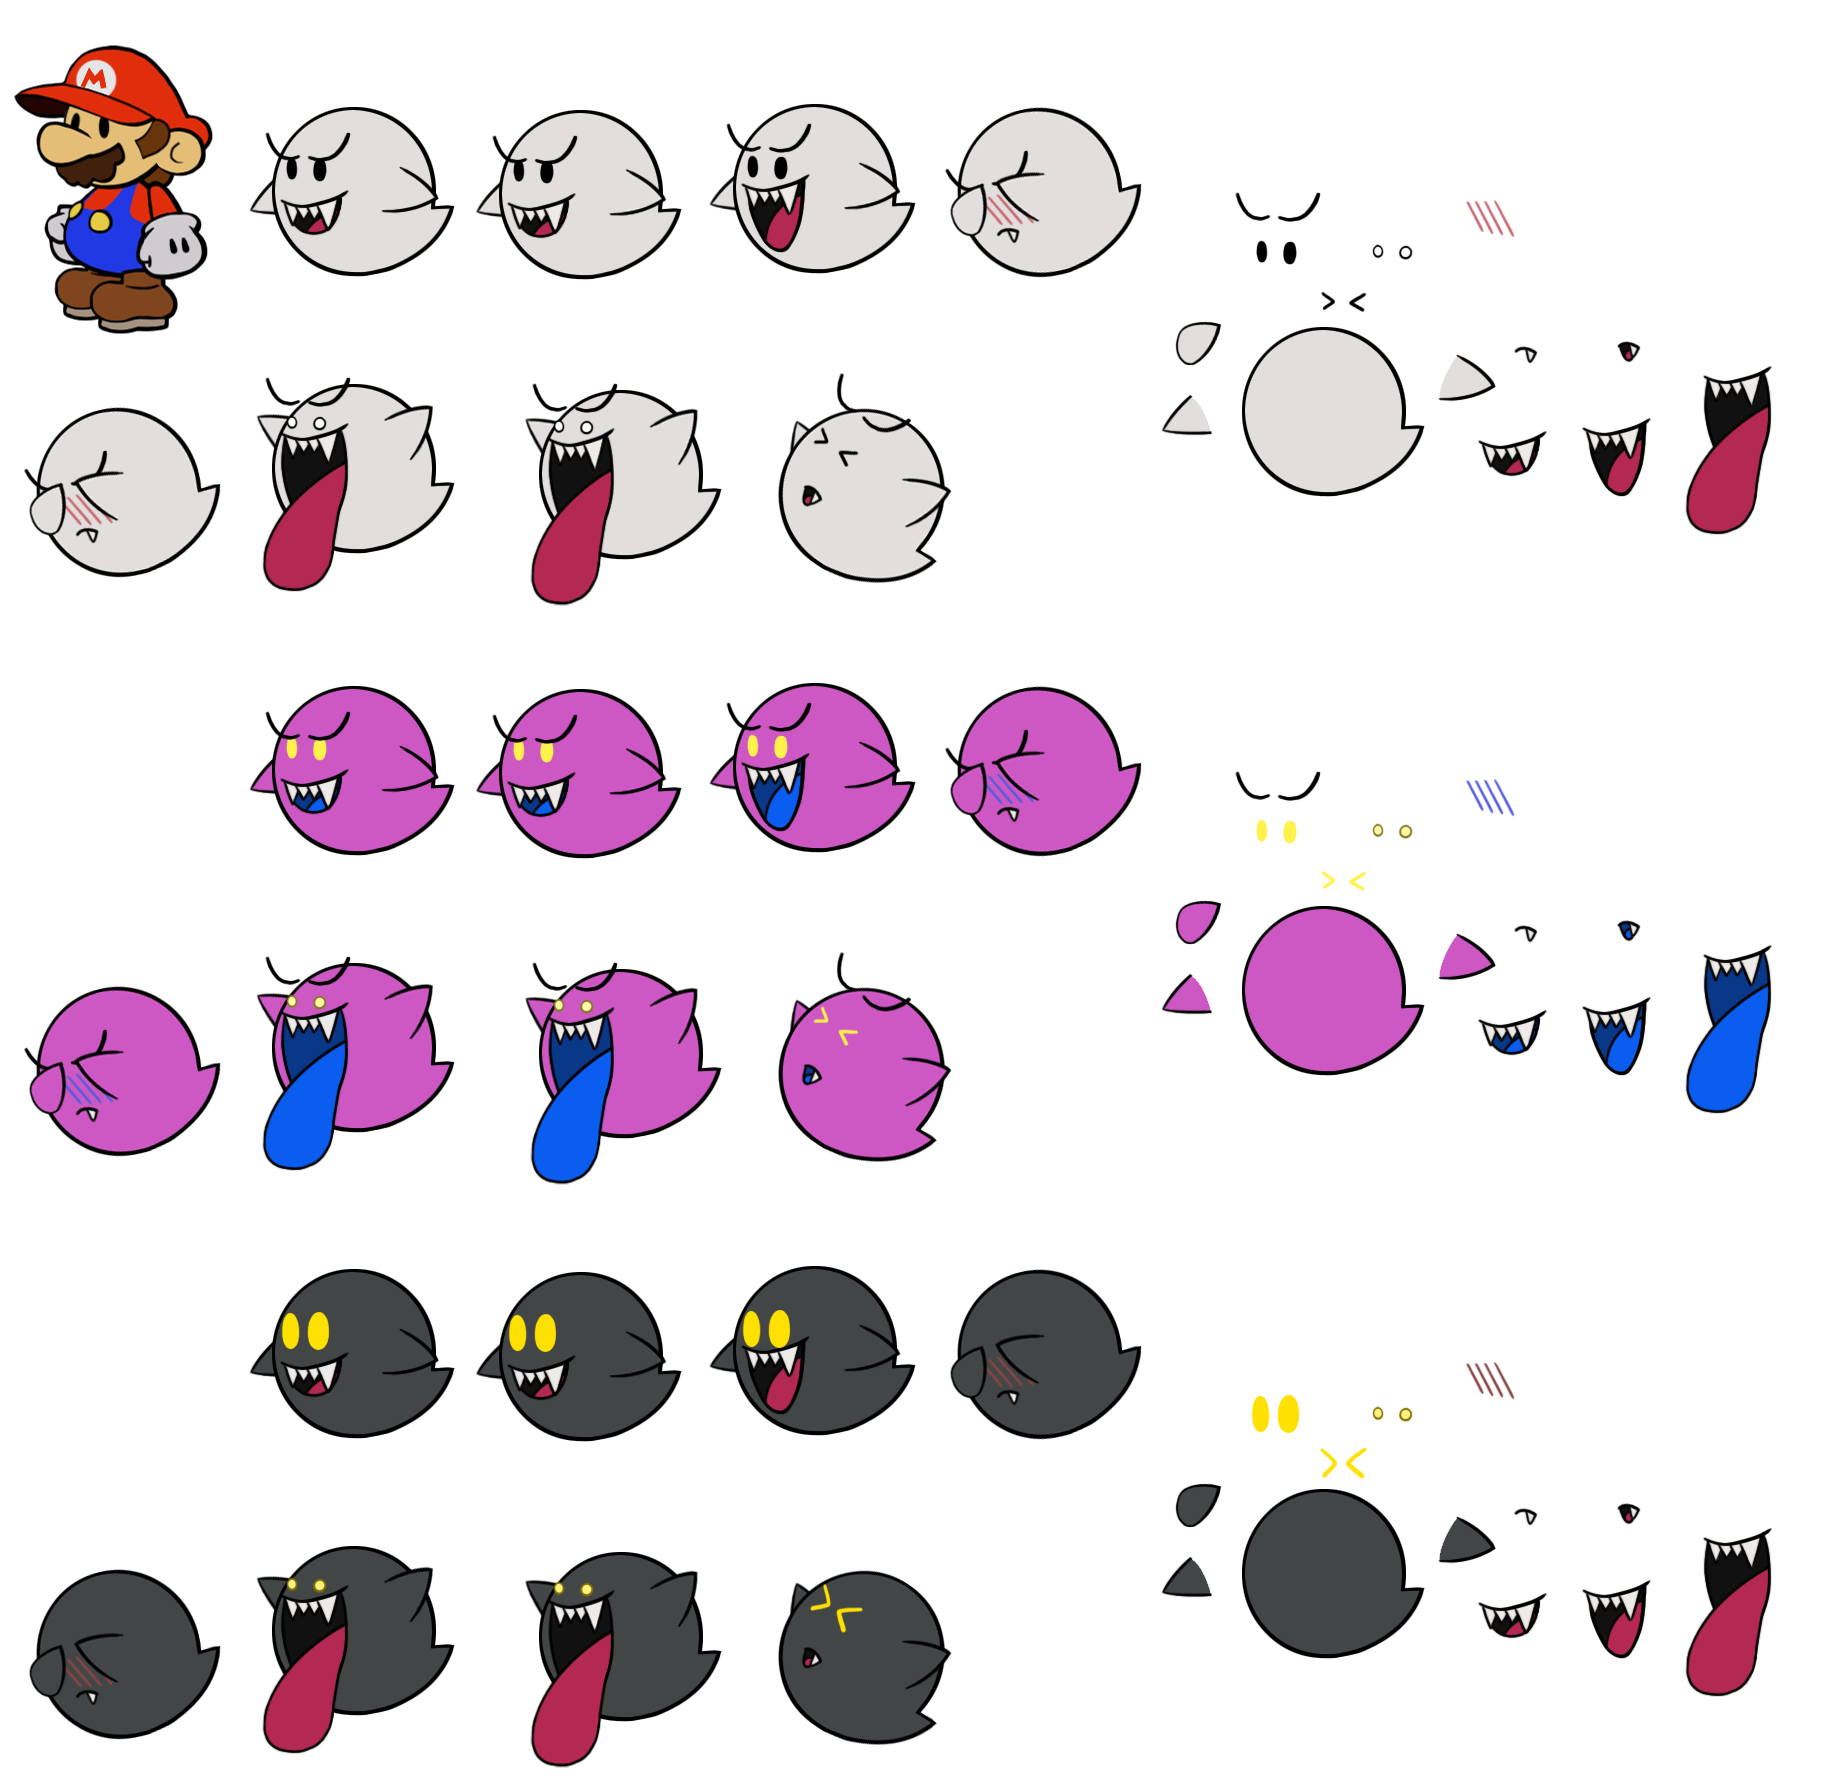 Mario Customs - Boo (Paper Mario: Color Splash-Style)